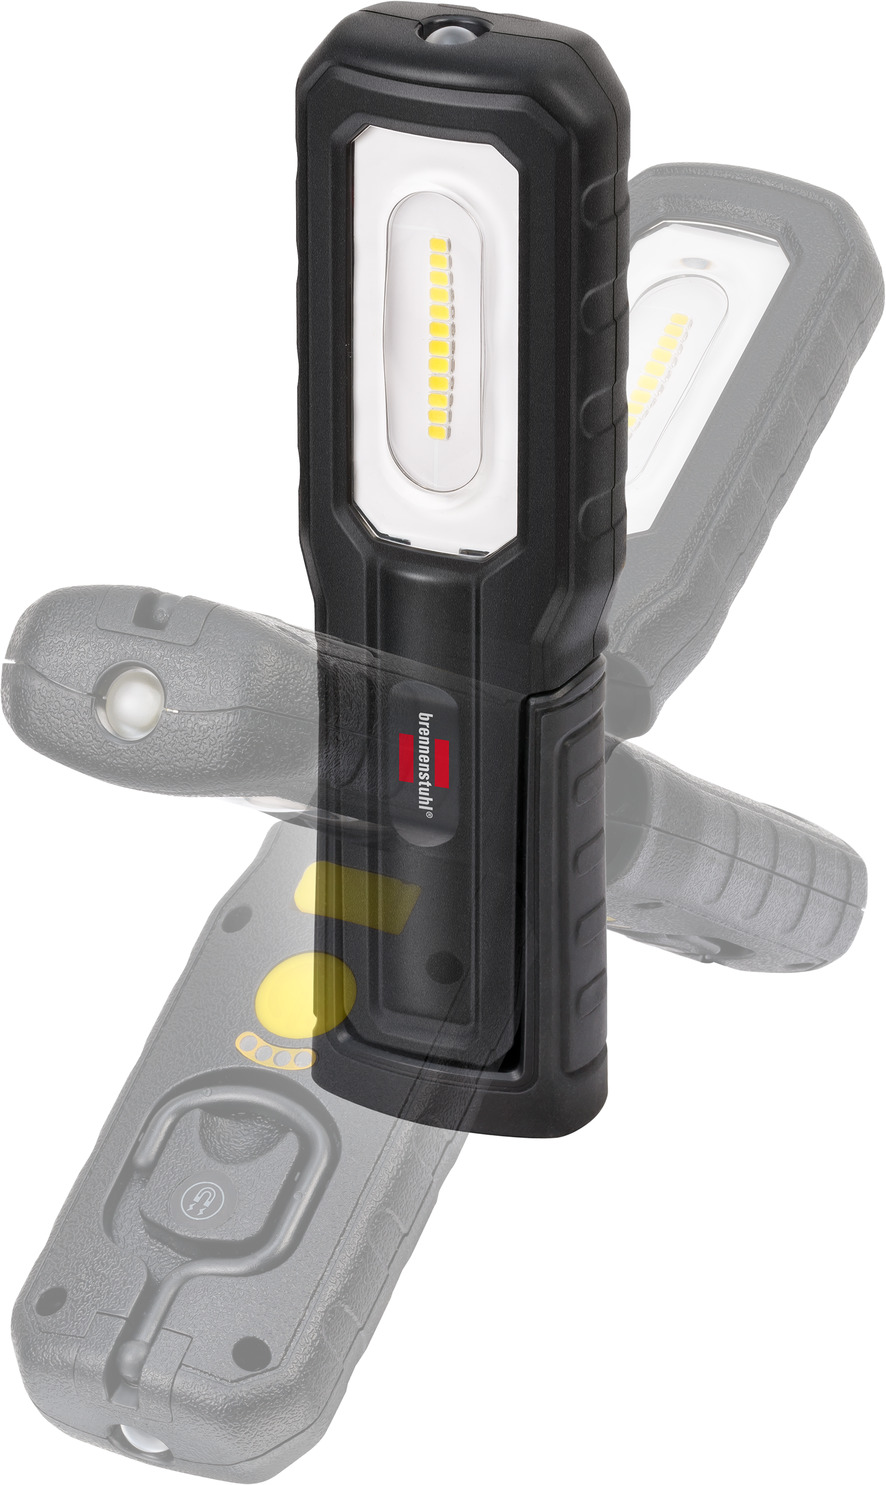 Torche LED Haute Luminosité Multifonctions Aluminium Compact Batterie Akku  ´S 7001119014622